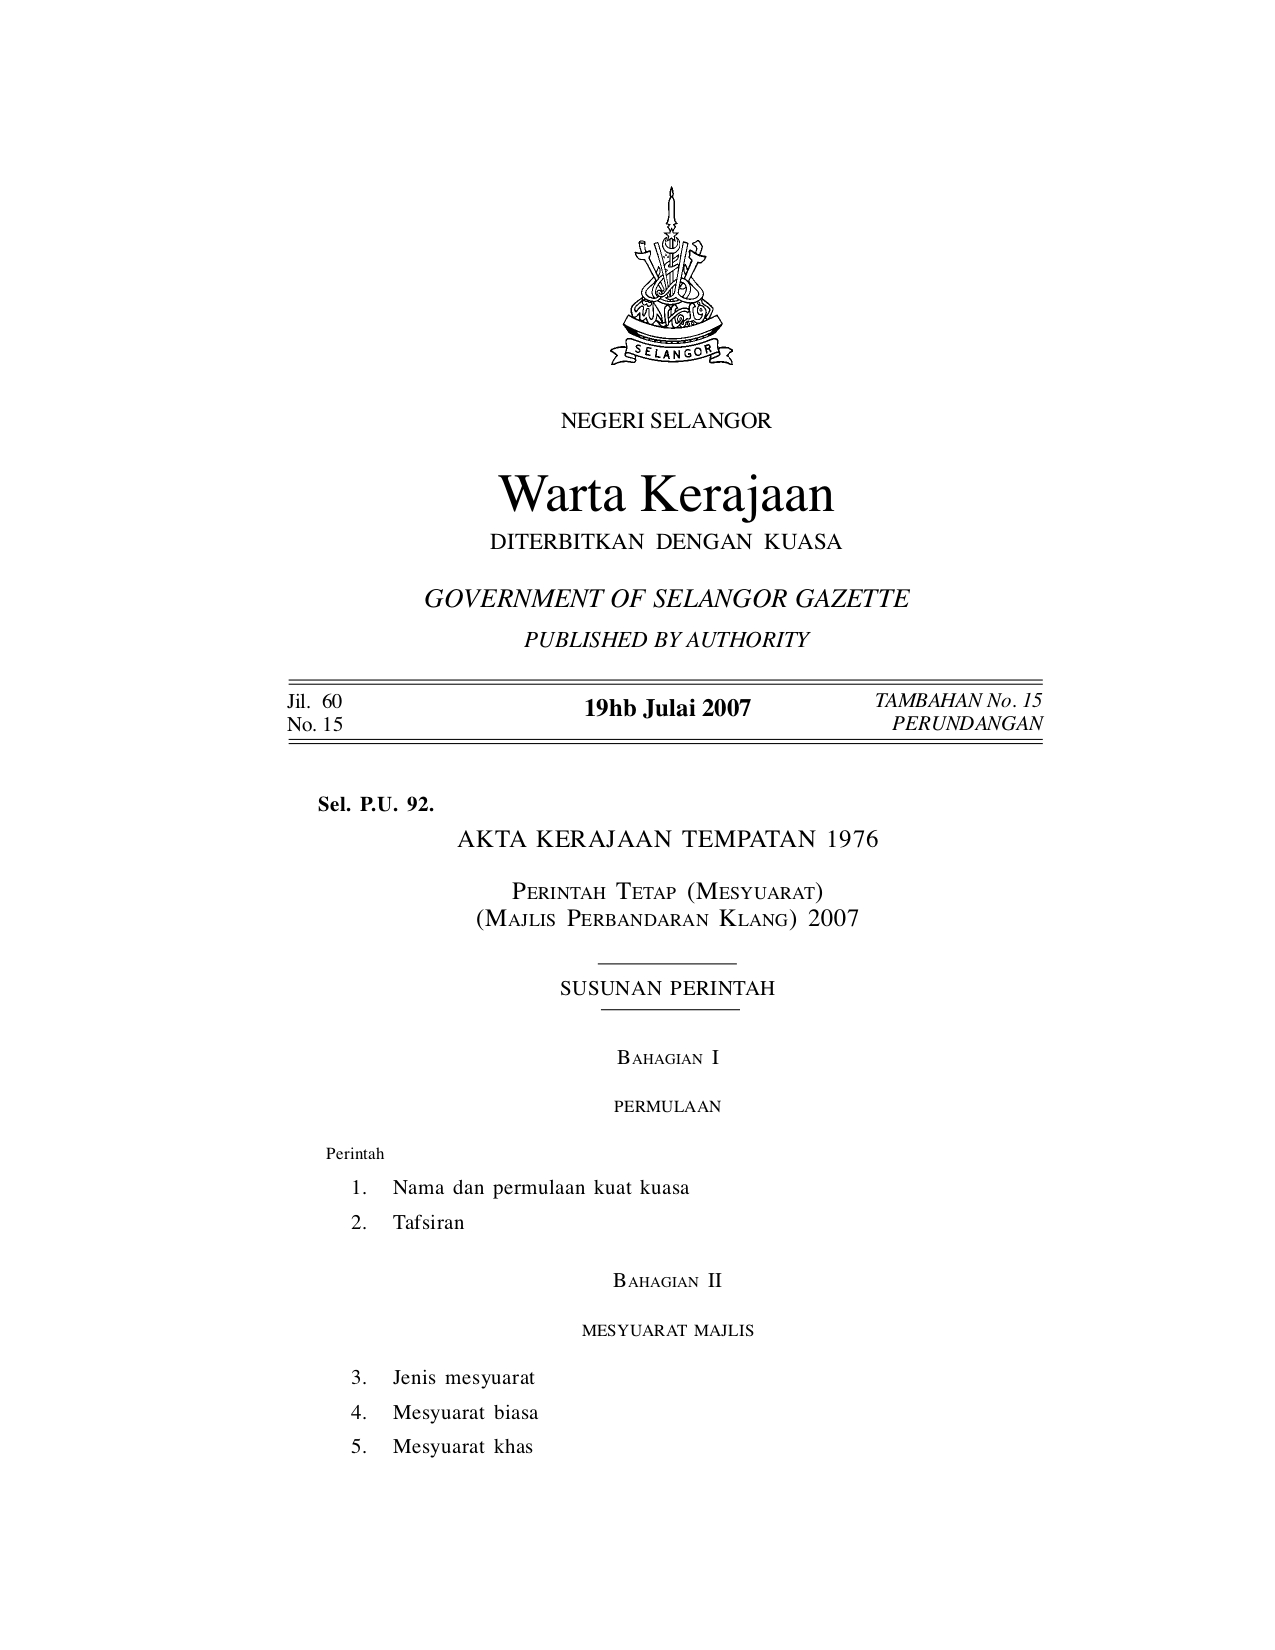 Perintah Tetap (Mesyuarat) (Majlis Perbandaran Klang) 2007 - Akta Kerajaan Tempatan 1976